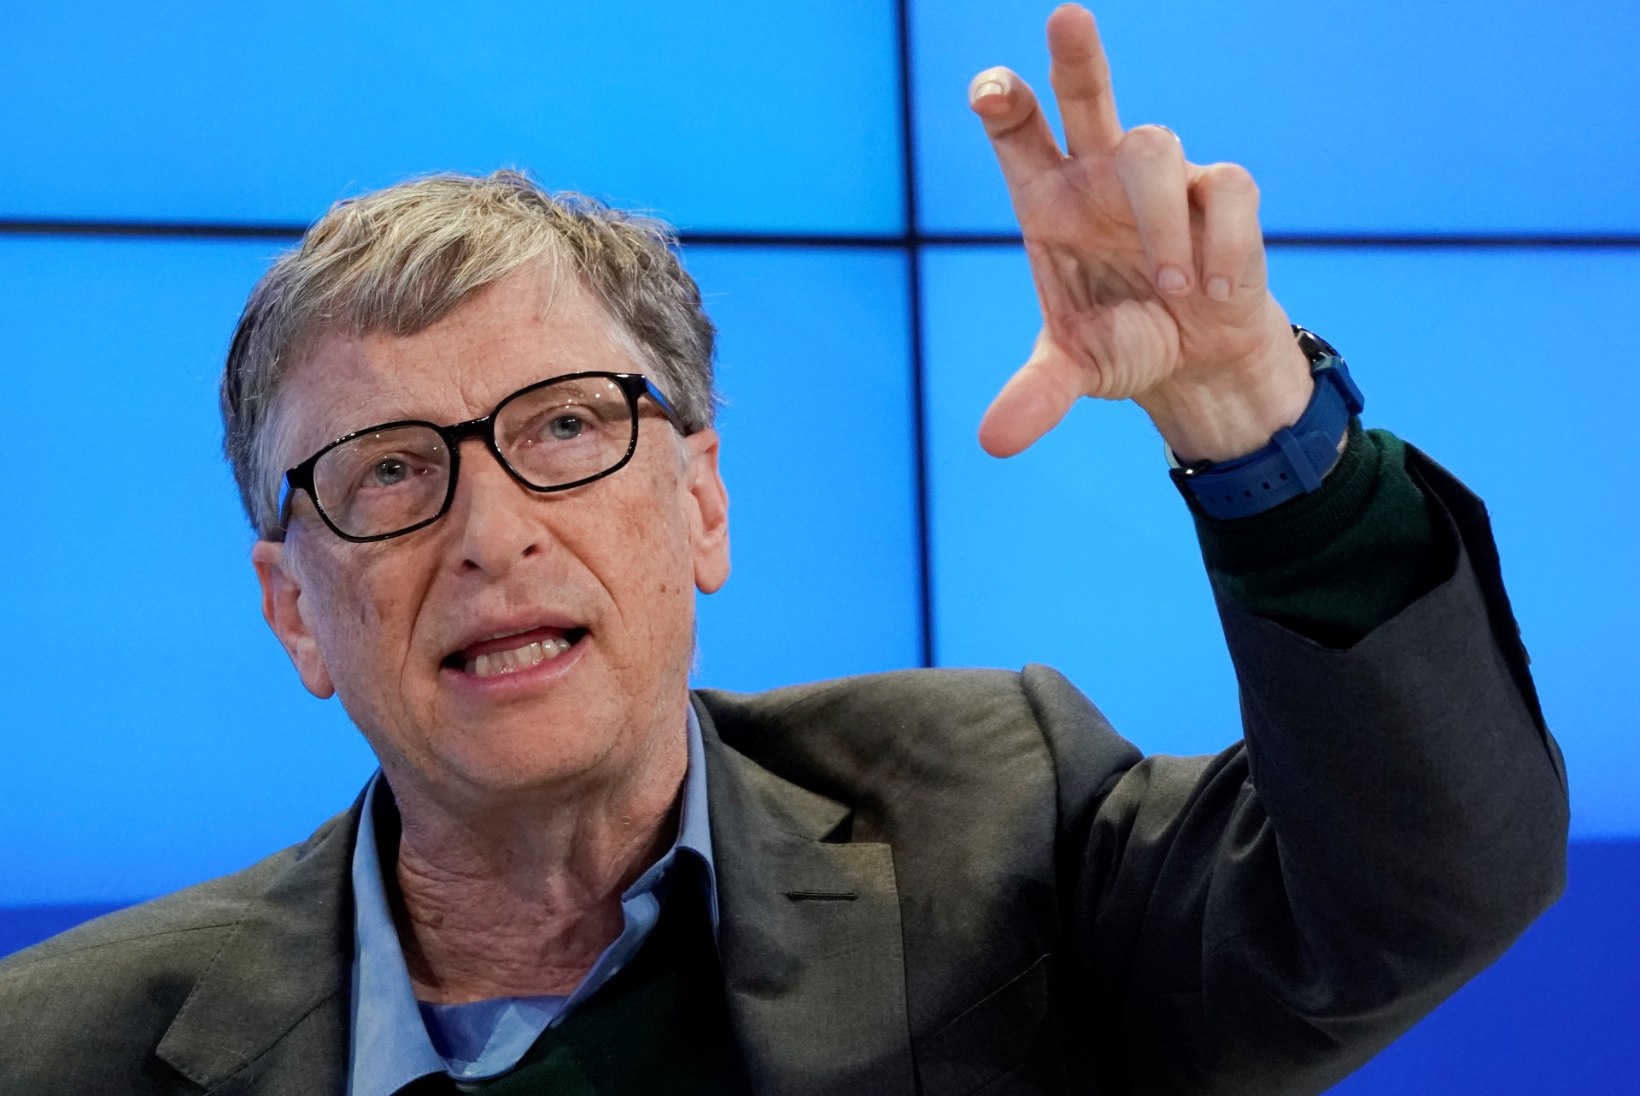 Bill Gates sai rolli USA menuseriaalis